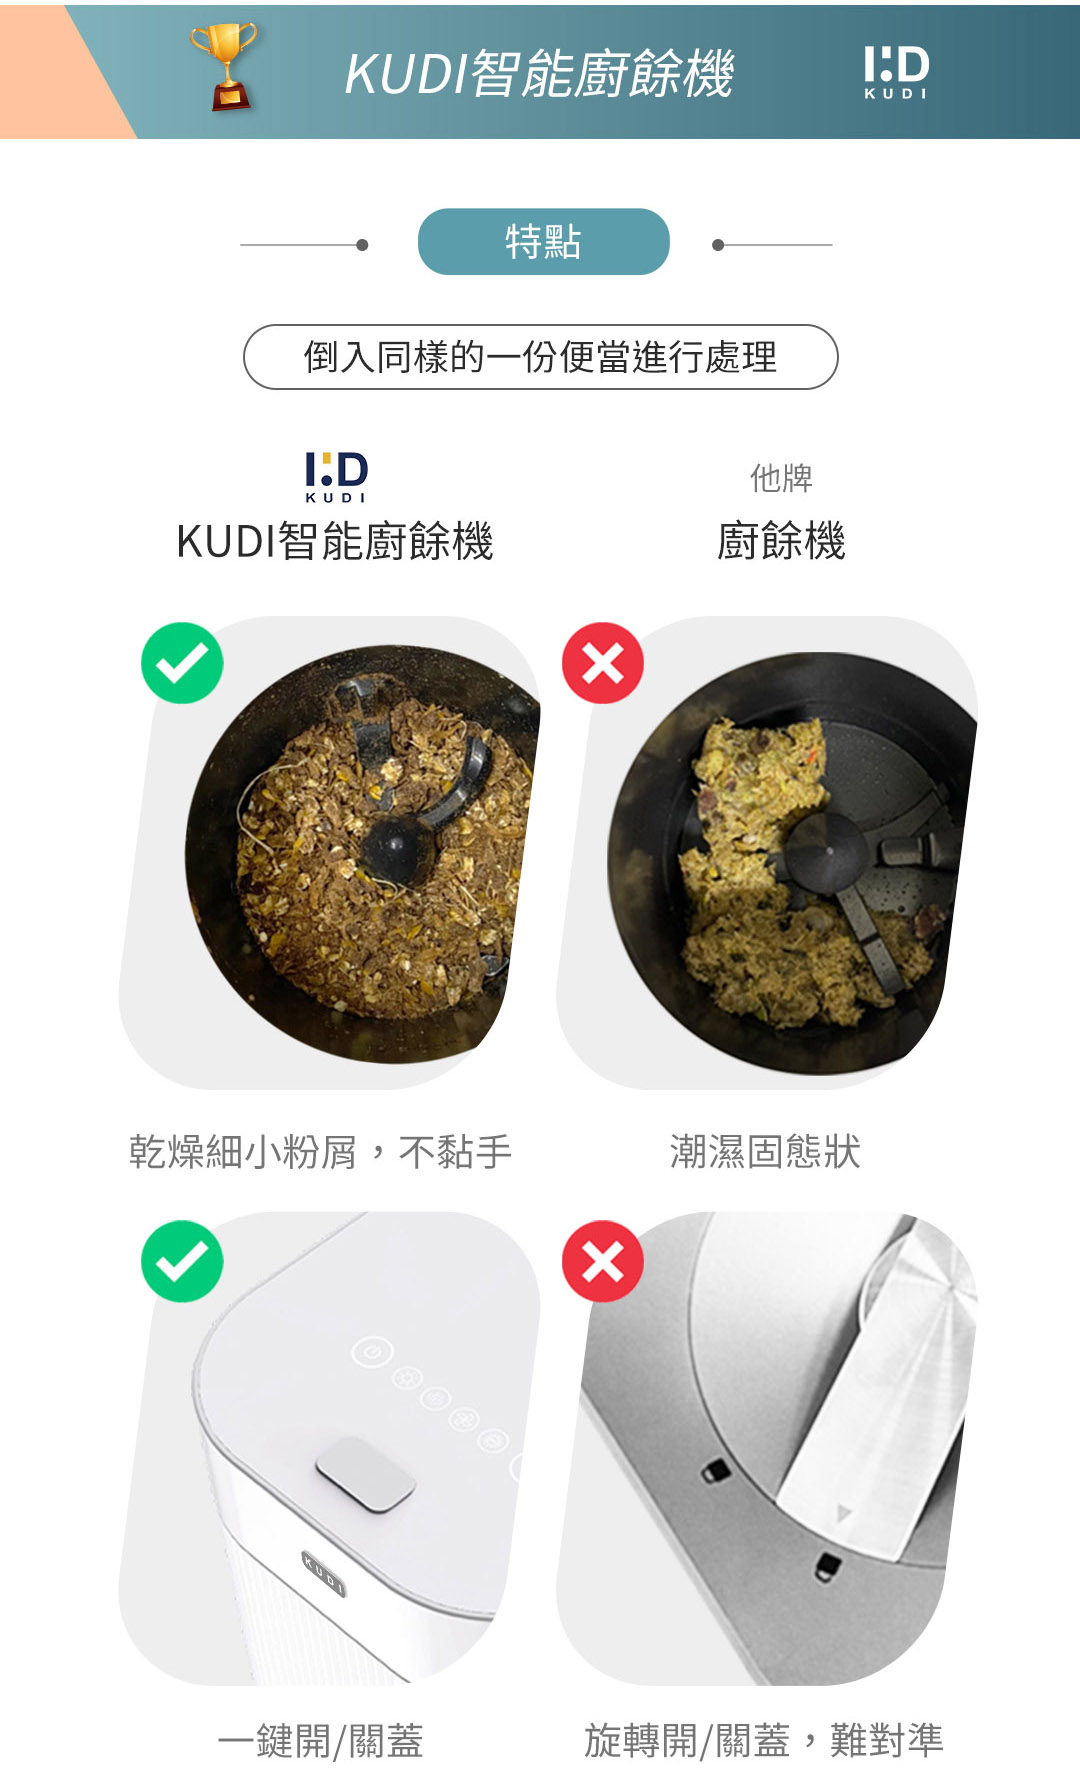 【KUDI庫迪】智能廚餘機 六合一家用廚餘專家(KD-KF2)保固18個月